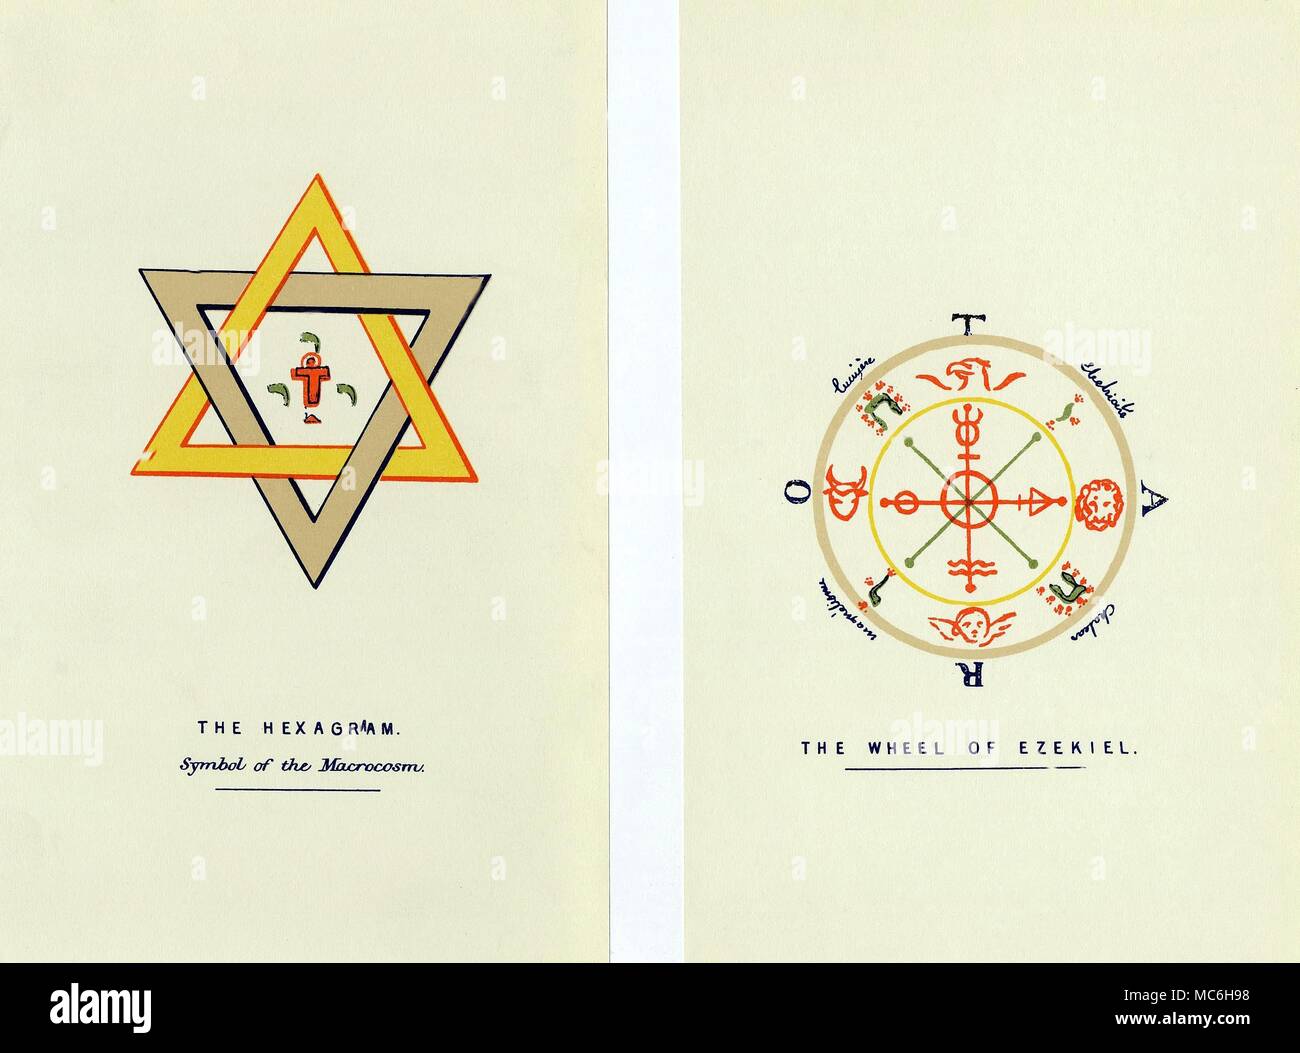 I simboli magici - LA HEXAGRAM e la ruota di Ezechiele i simboli magici redatto con specifico riferimento ad uno studio di progettazione segreta del mazzo di Tarocchi. [Sinistra] Il Hexagram, simbolo del macrocosmo, talvolta chiamato il sigillo di Salomone. Il giallo-rosso triangolo rappresenta il tendere verso l'alto mescolandosi e intersecante con il verso il basso in direzione dell'altro triangolo. È la riunione delle due terne - uno è la Trinità soprannaturale, le altre tre volte l'uomo (l'Uomo di pensiero e di sentimento e disposta): in termini di magia, questa è la riunione del macrocosmo e microcosmo. In cento Foto Stock